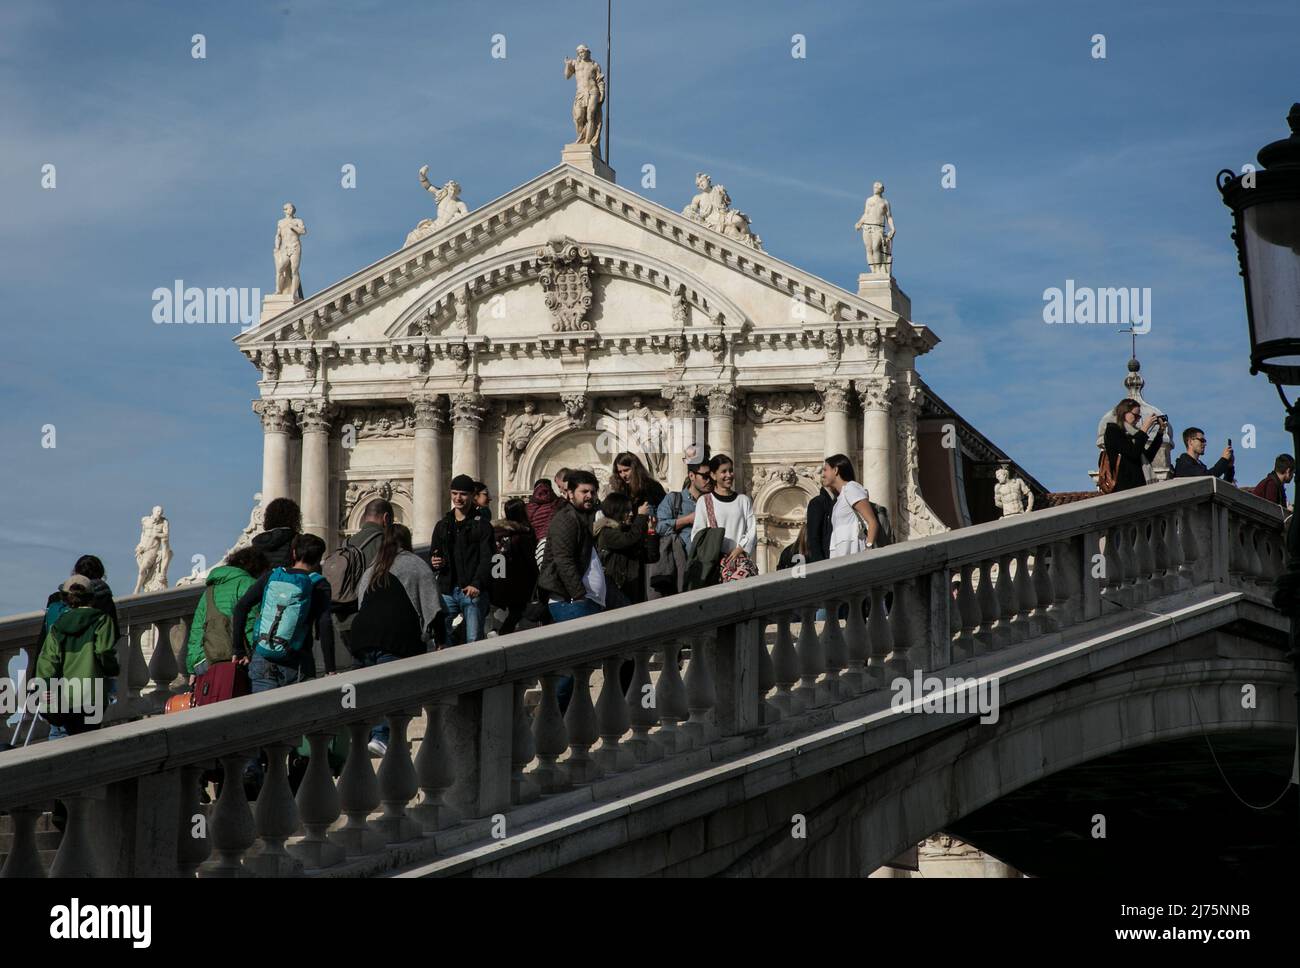 Italien Venedig Scalzi-Kirche -451 Giebel 1677-80 von Guiseppe Sardi davor Scalzi-Brücke 1934 von Eugenio Miozzi Teilansicht mit Passanten Stock Photo